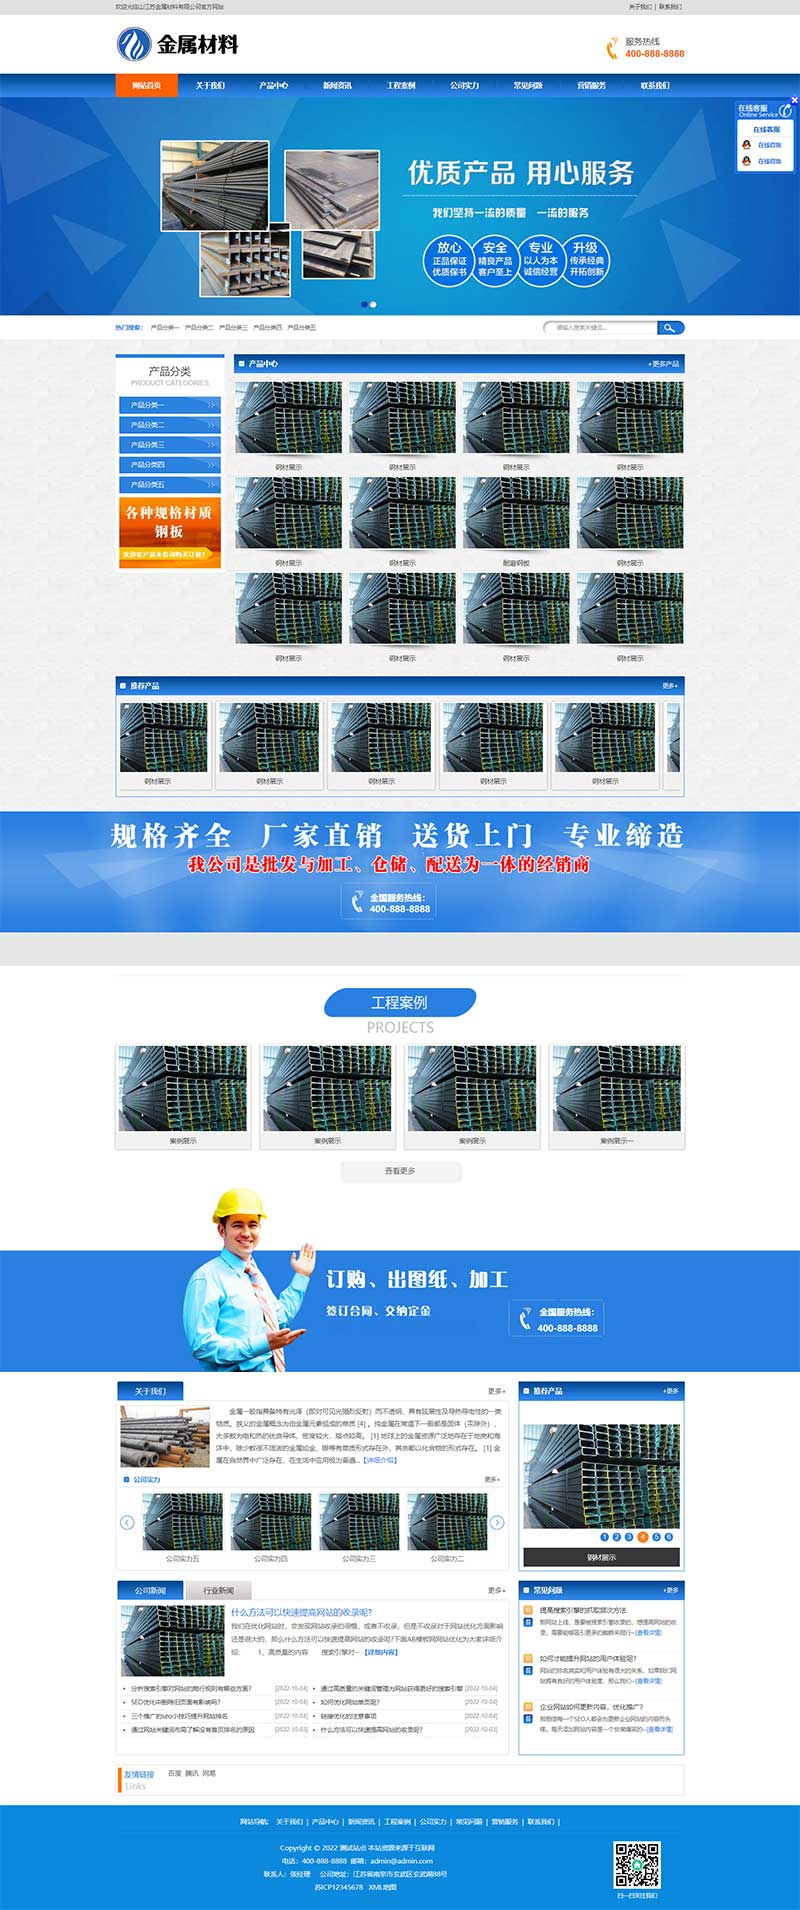 (PC+WAP)精美营销风格钢材金属材料加工制造企业网站电脑端模板展示图片